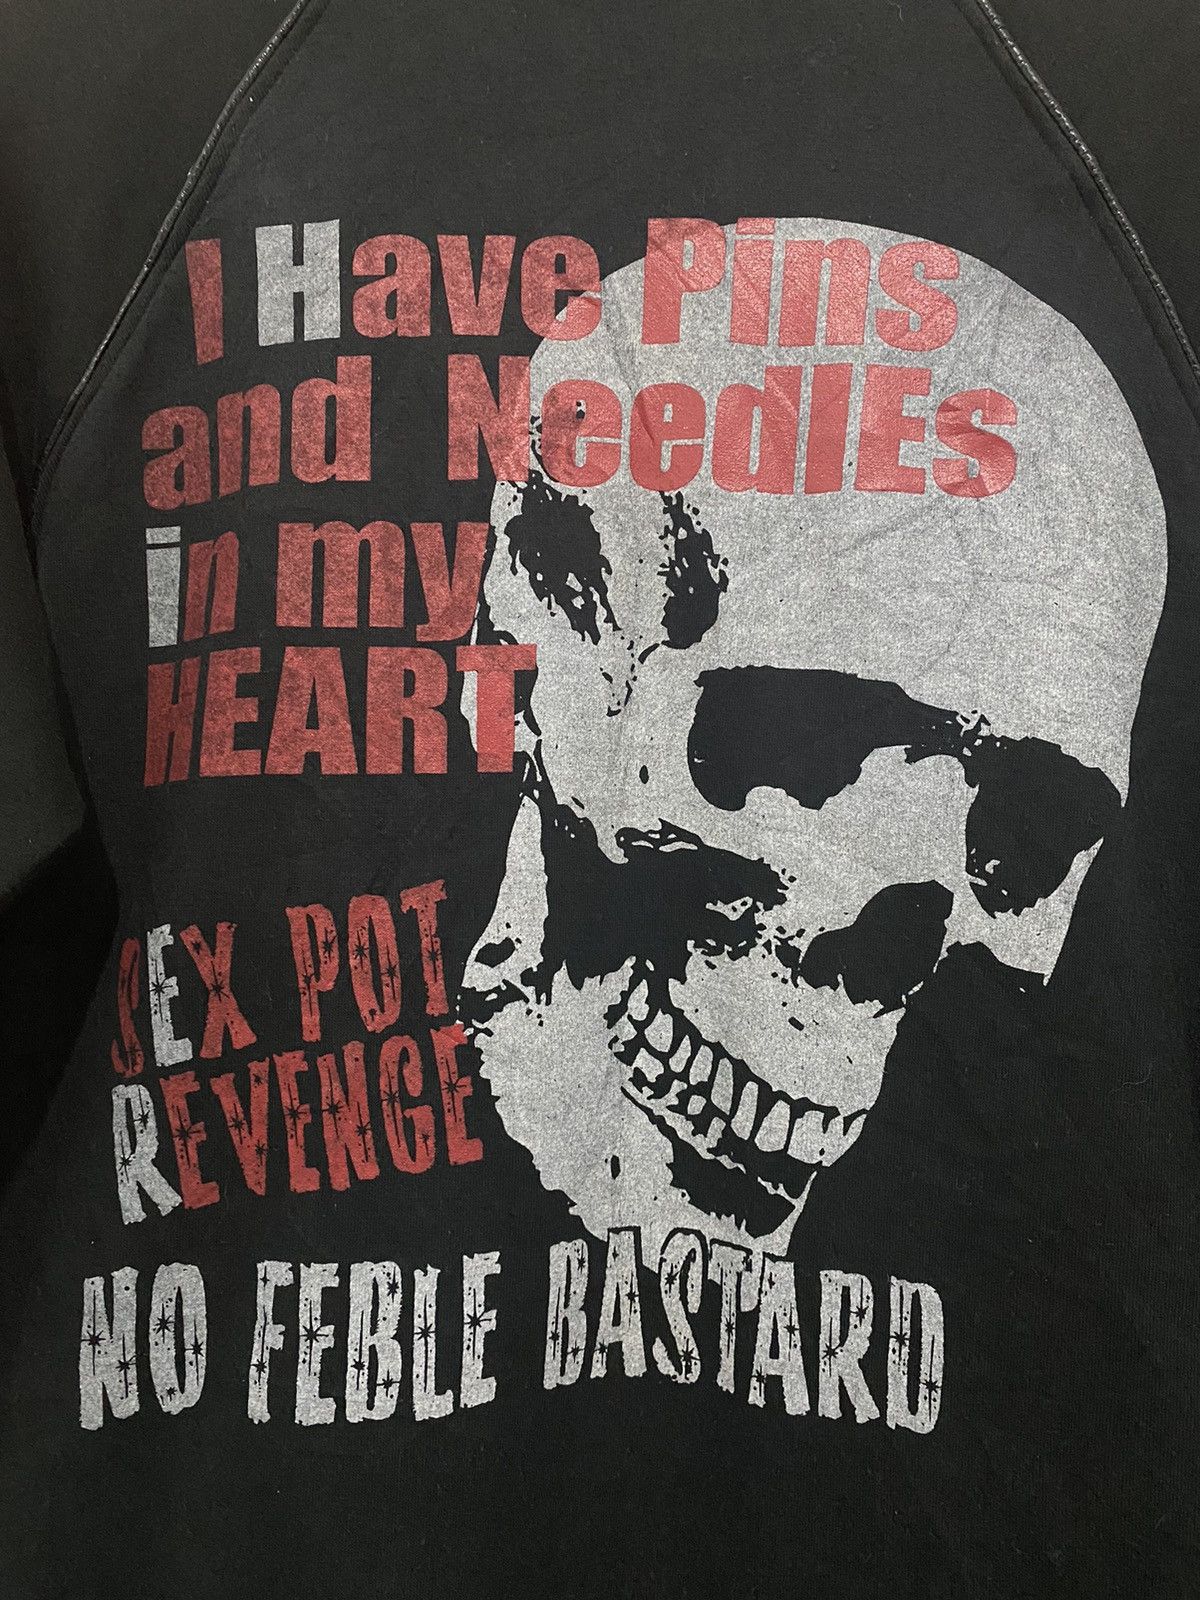 If Six Was Nine - Sex Pot Revenge Punk Skull Button Up Cotton Jacket Fit S - 4